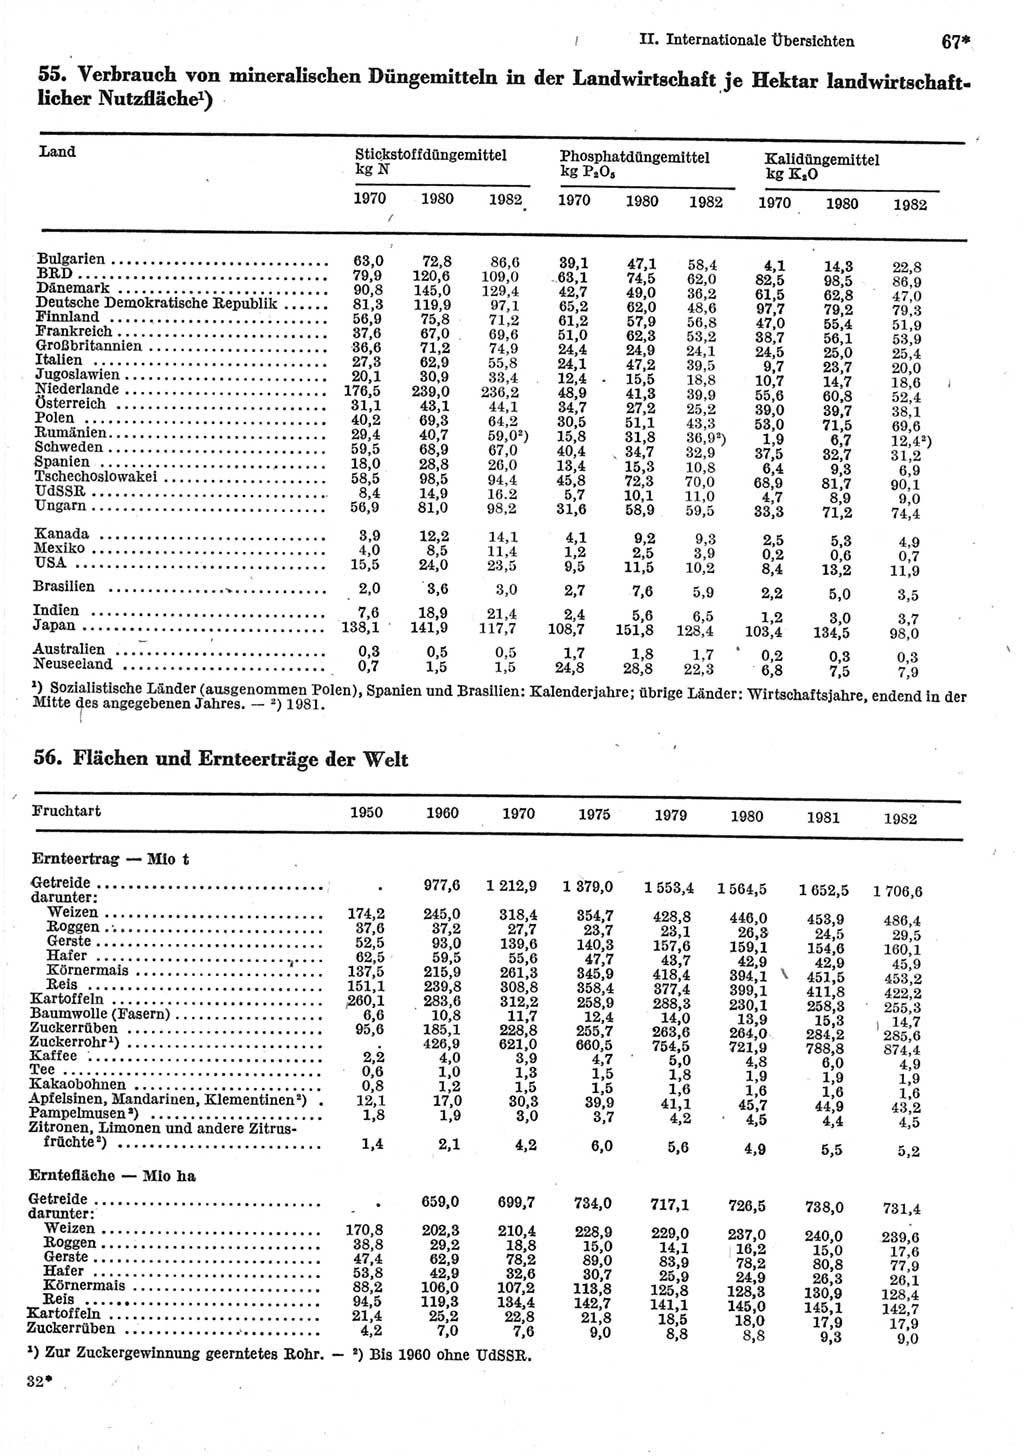 Statistisches Jahrbuch der Deutschen Demokratischen Republik (DDR) 1984, Seite 67 (Stat. Jb. DDR 1984, S. 67)